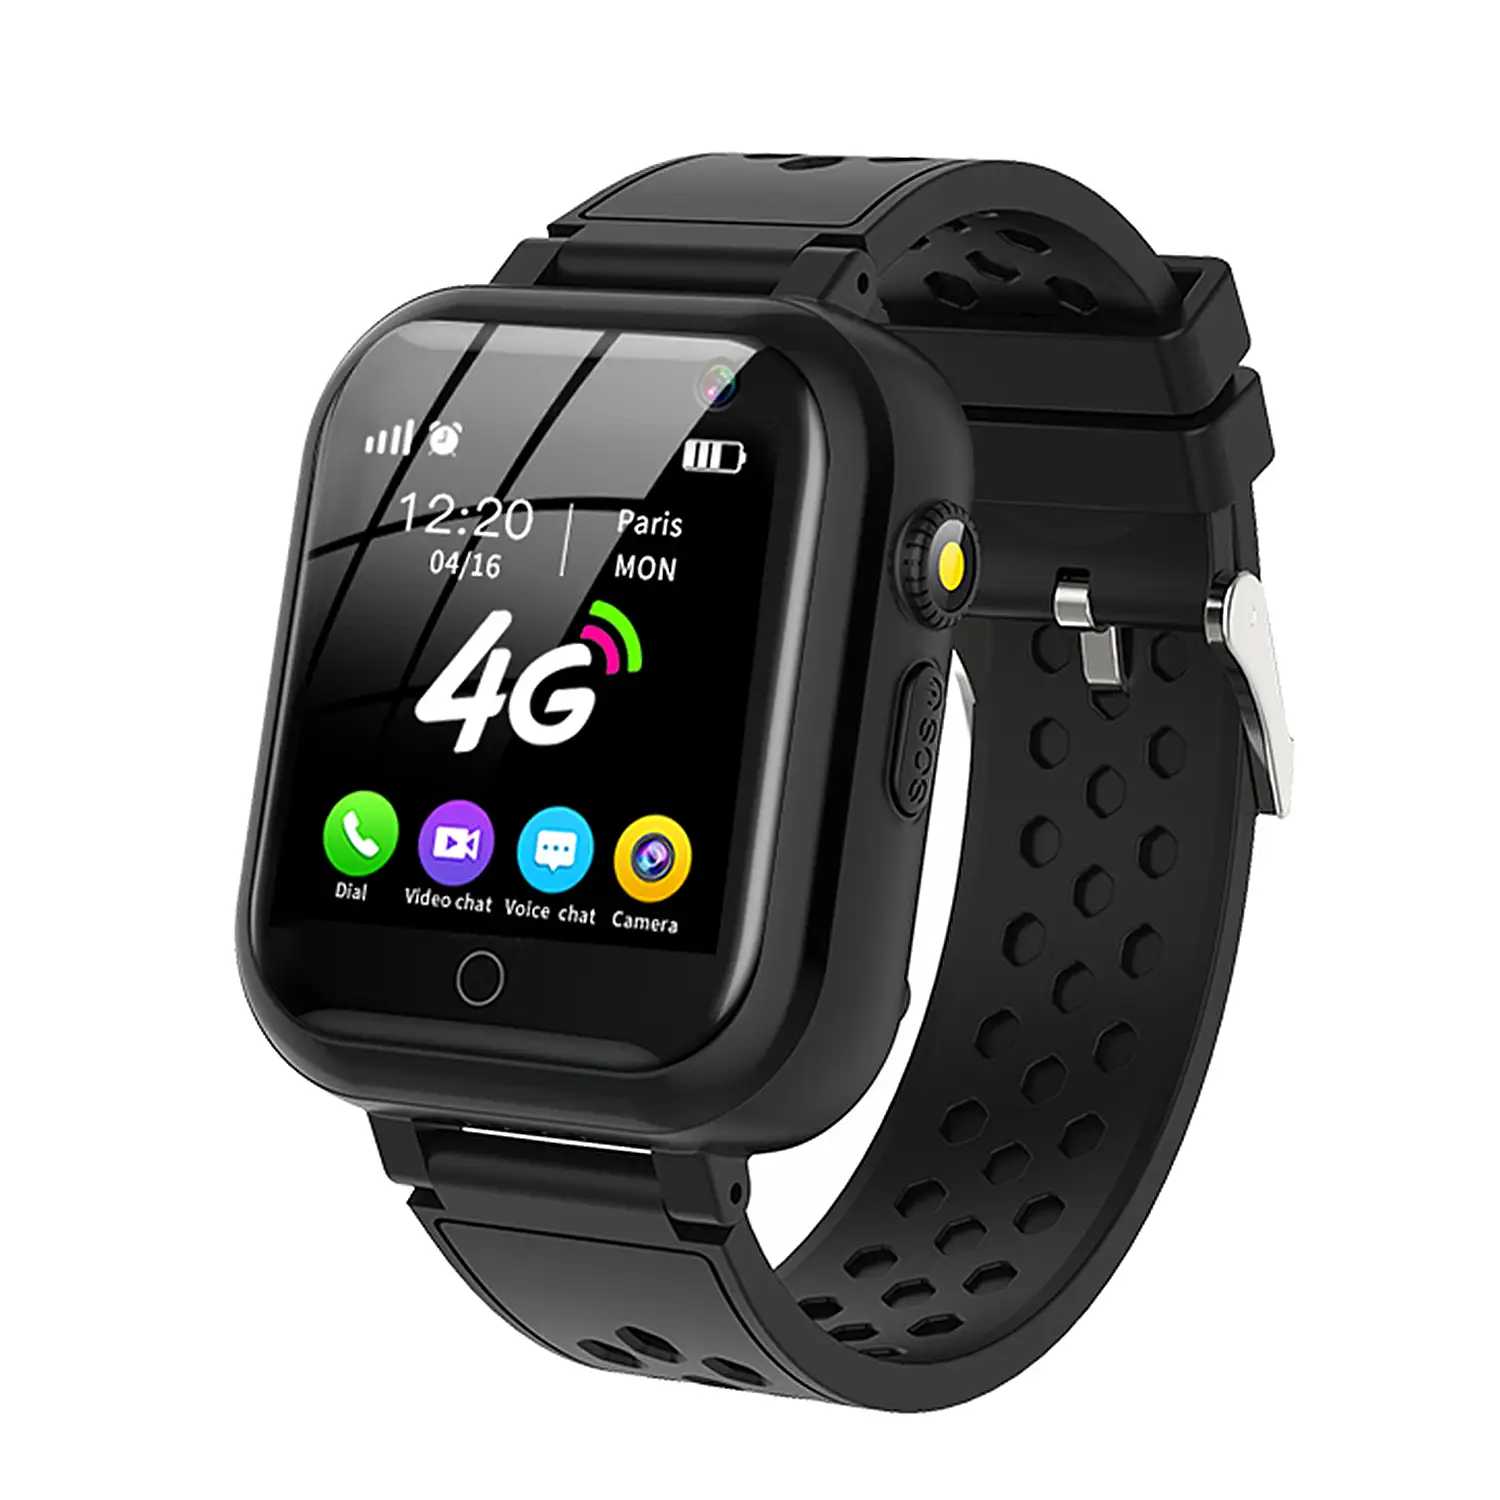 Smartwatch T16 4G localizador GPS,Wifi y LBS. Videollamada, micro chat,  botón SOS.